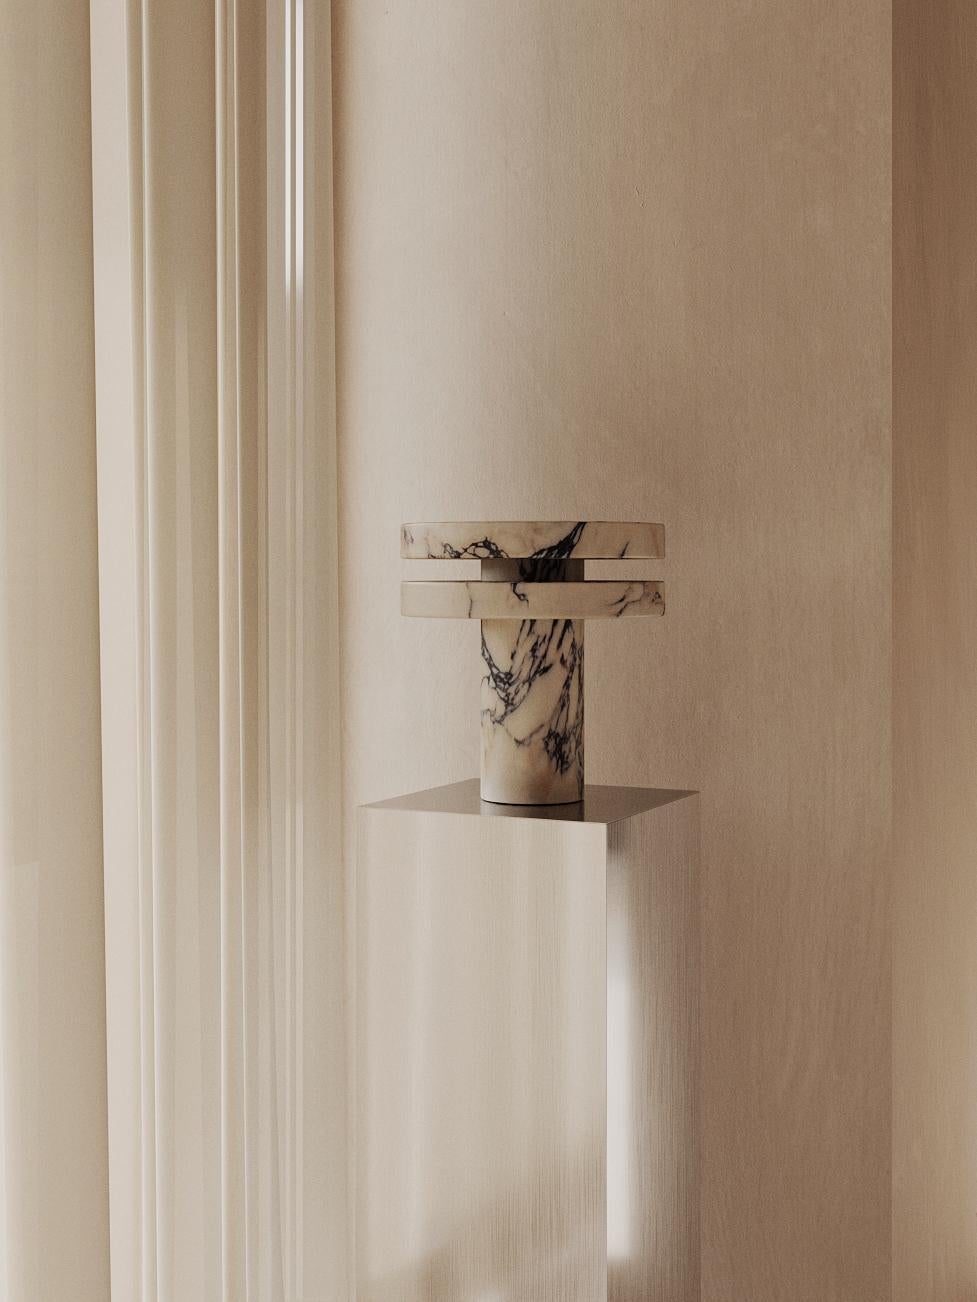 Die M_014 Tischleuchte wird von Hand aus einem schönen Block Calacatta Viola Marmor geschnitzt. Sein brutalistisches Design ist sowohl skulptural als auch kraftvoll. Sie wird von einer warmen 2700k-LED-Leiste betrieben, die im Sockel der Lampe